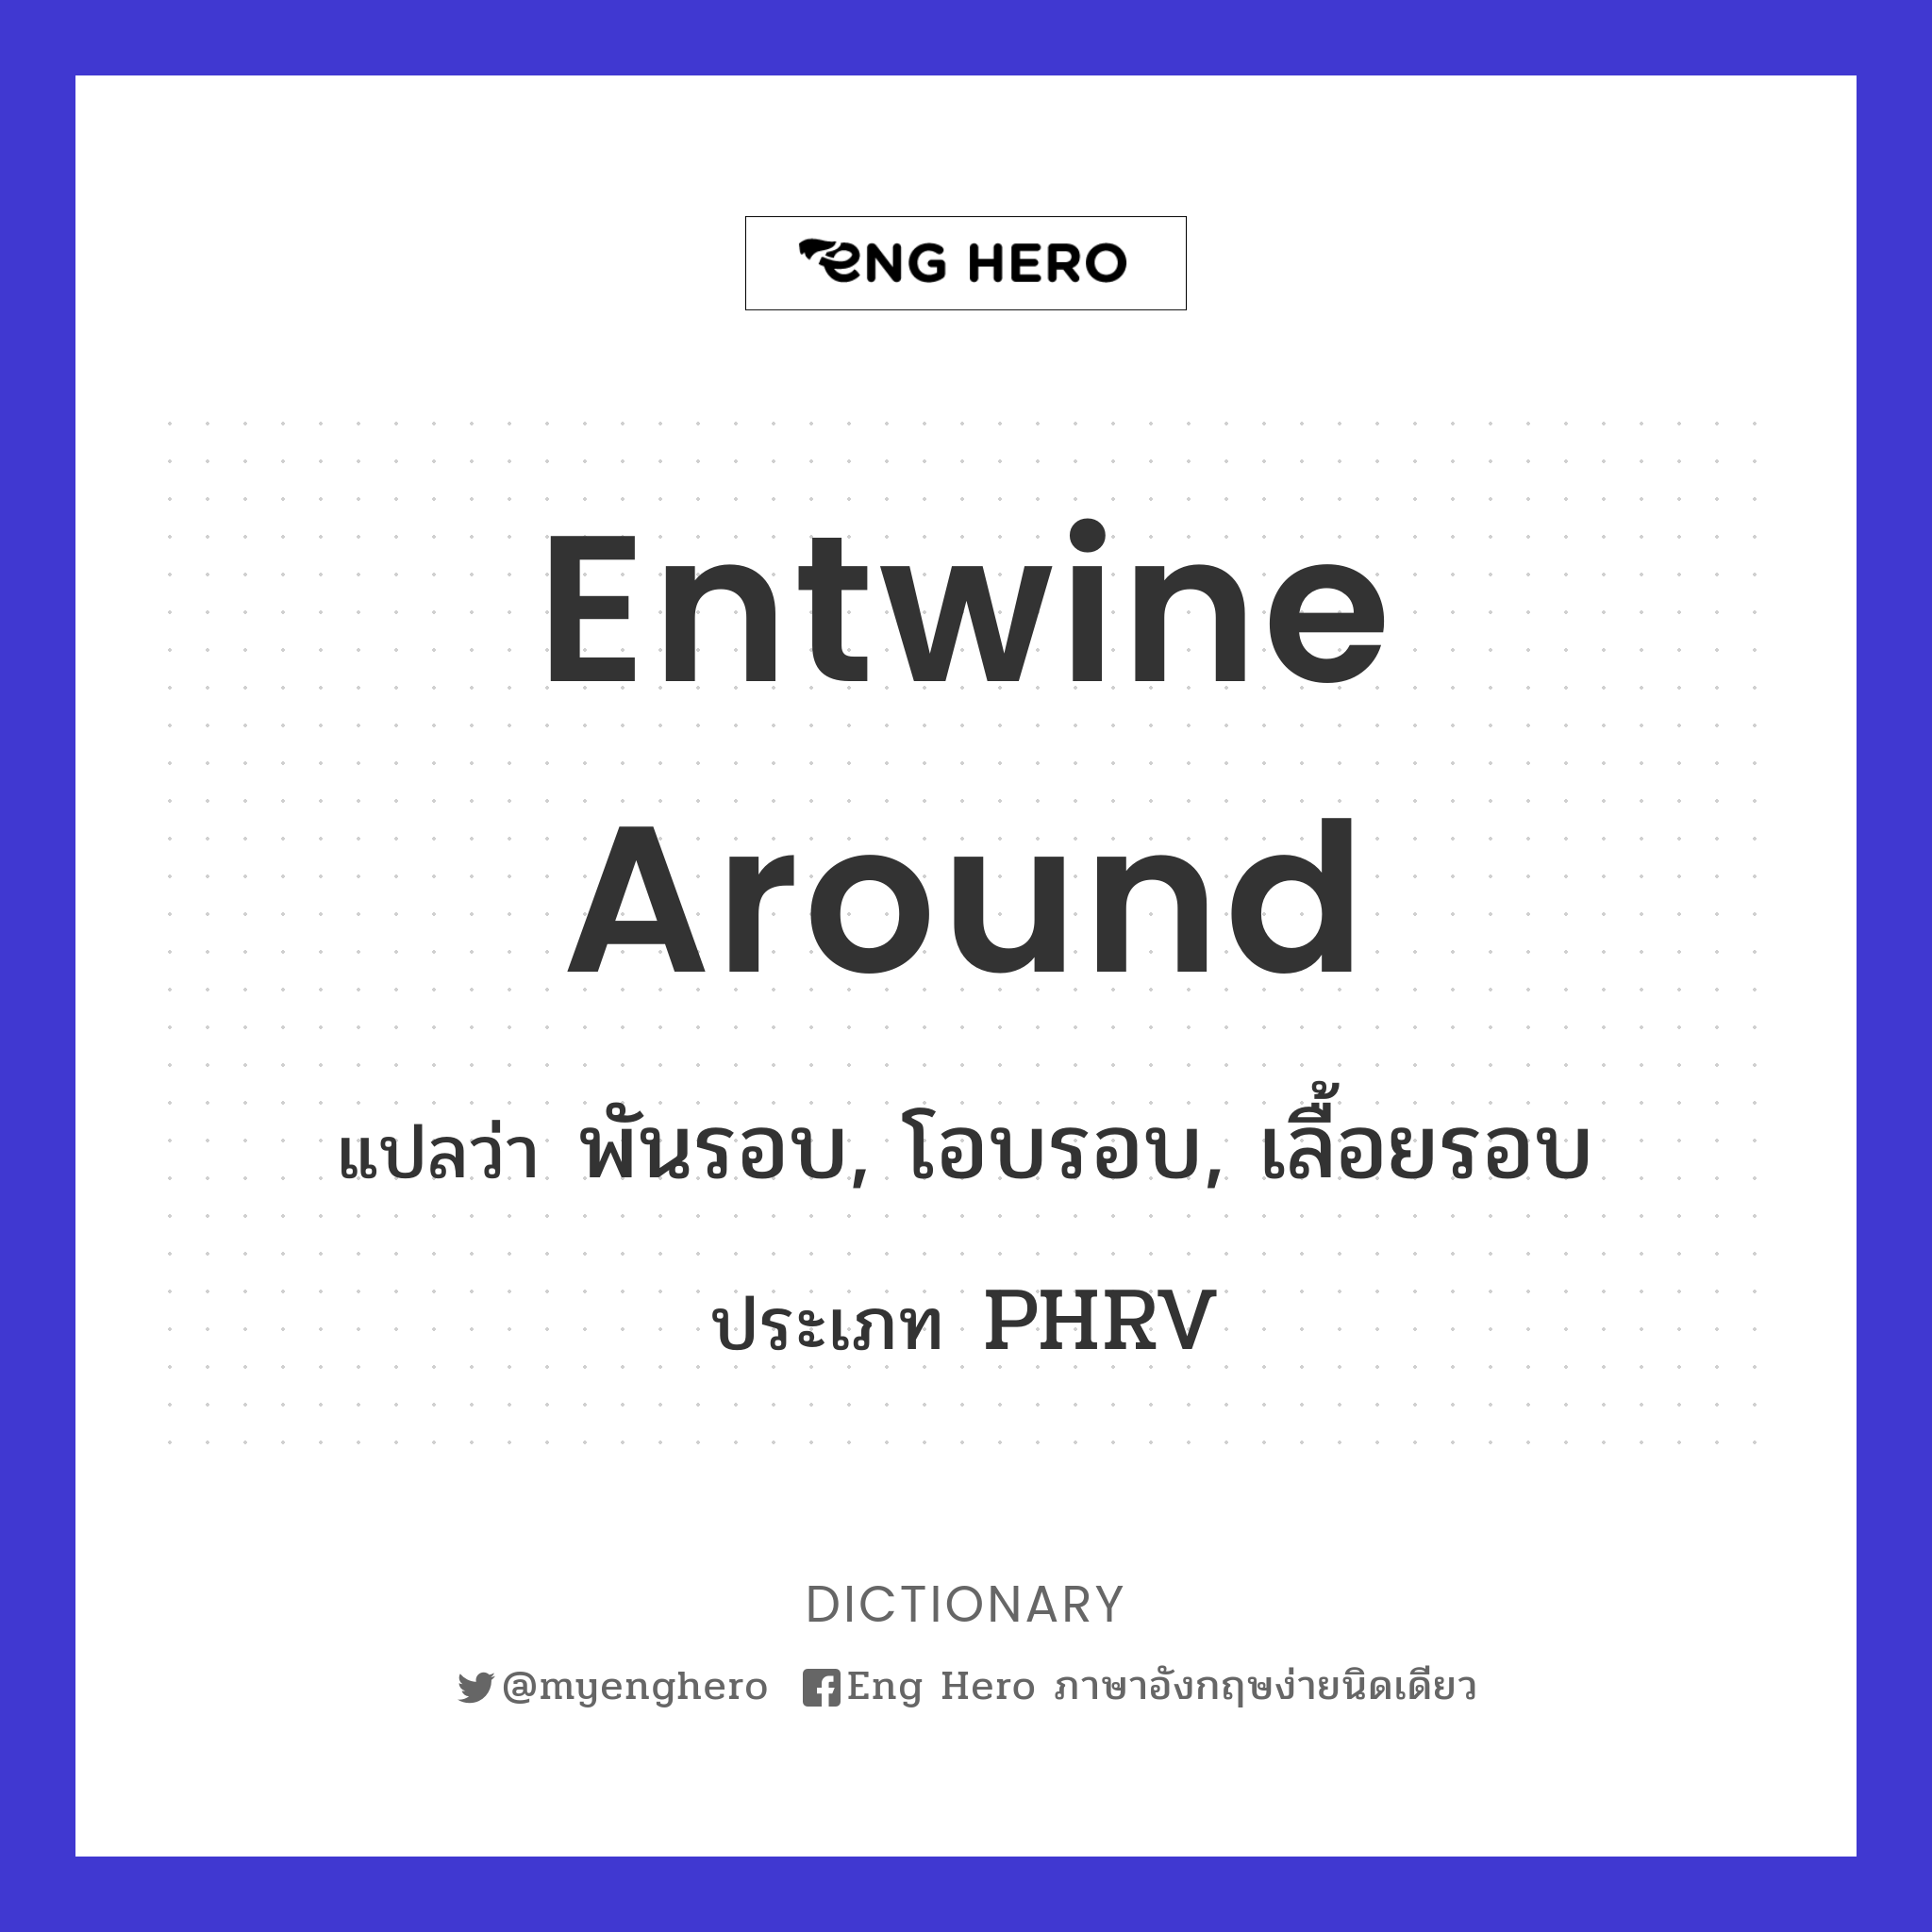 entwine around